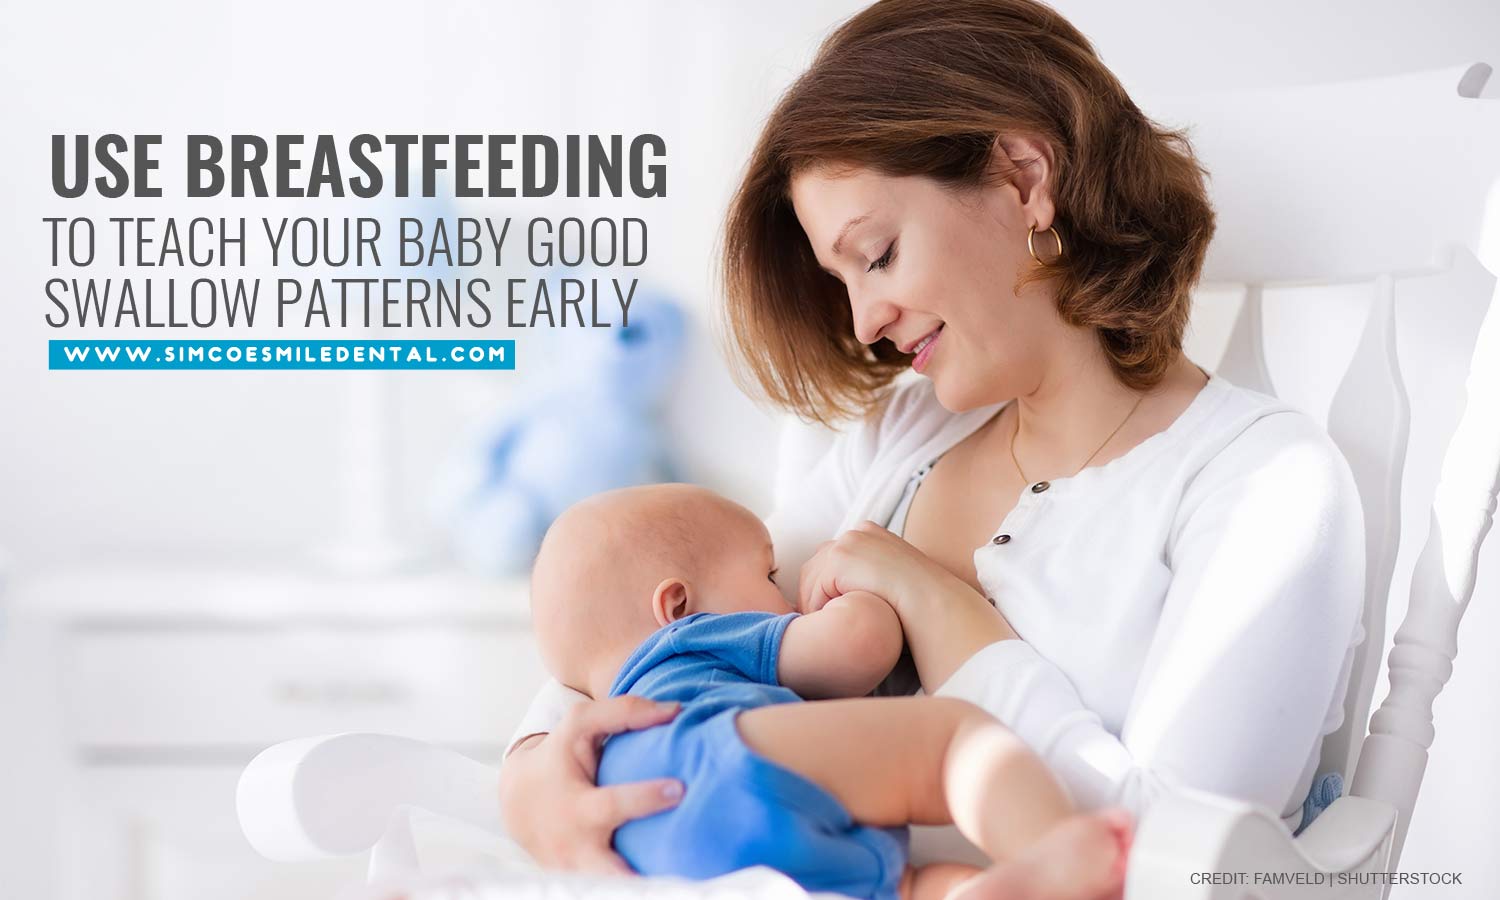 Breastfeeding has risks